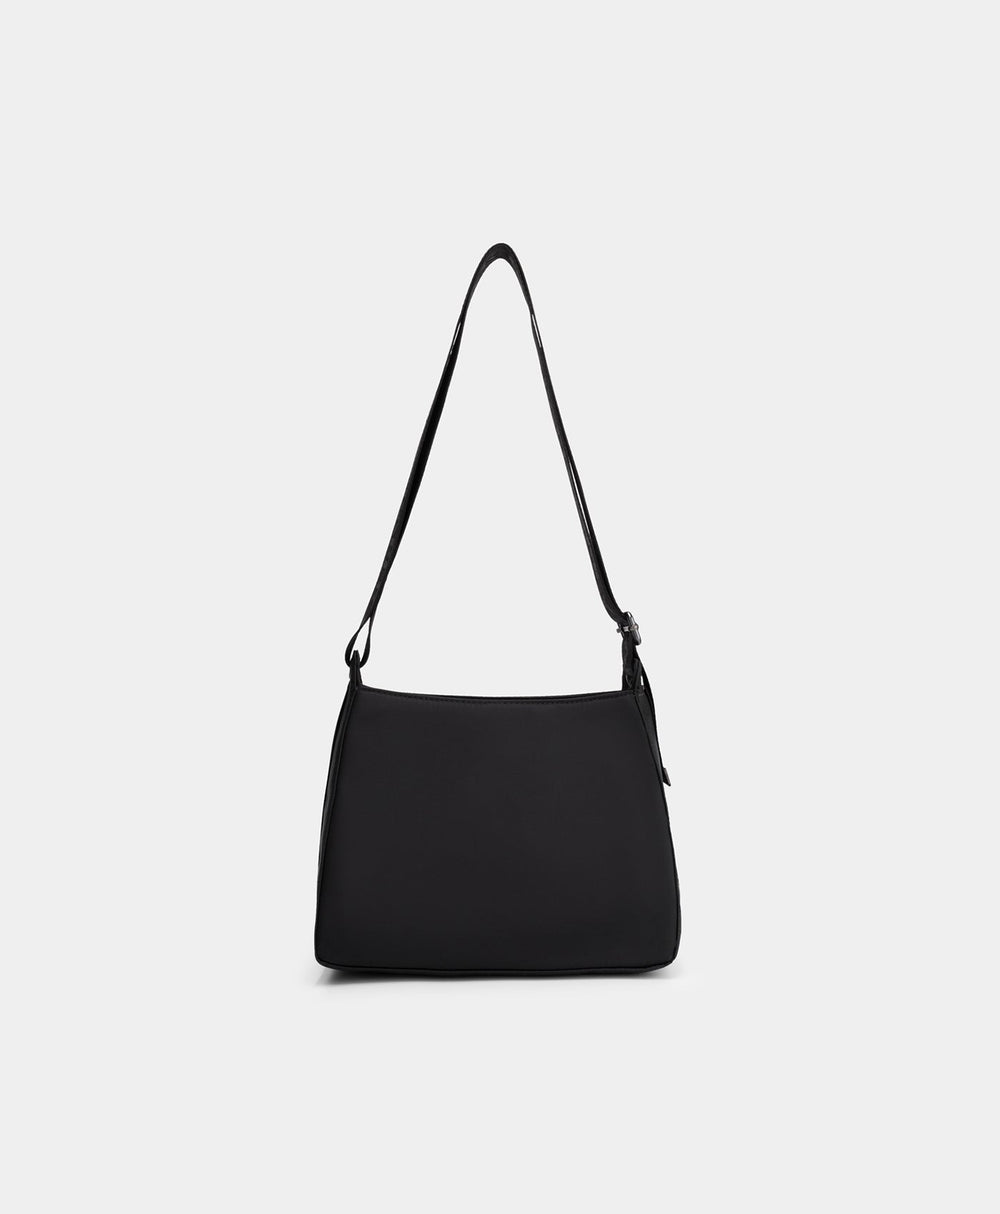 DP - Black Estra Bag - Packshot - Rear